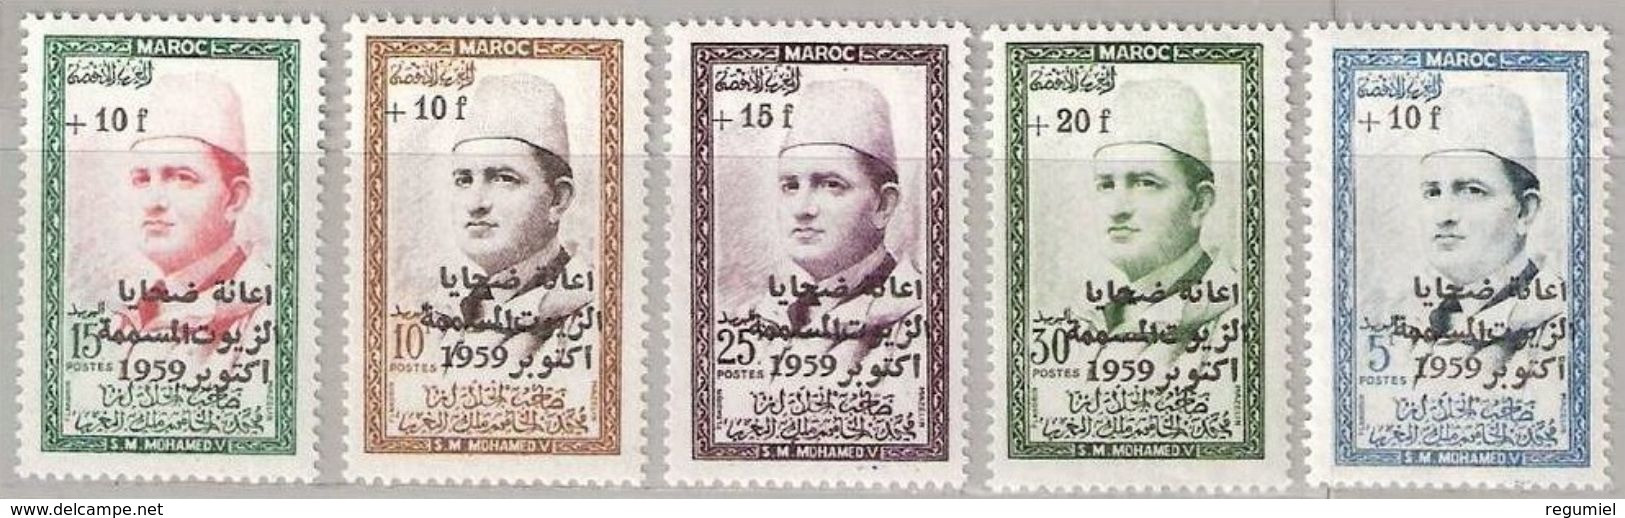 Maroc  397/401 ** MNH. 1960 - Maroc (1956-...)